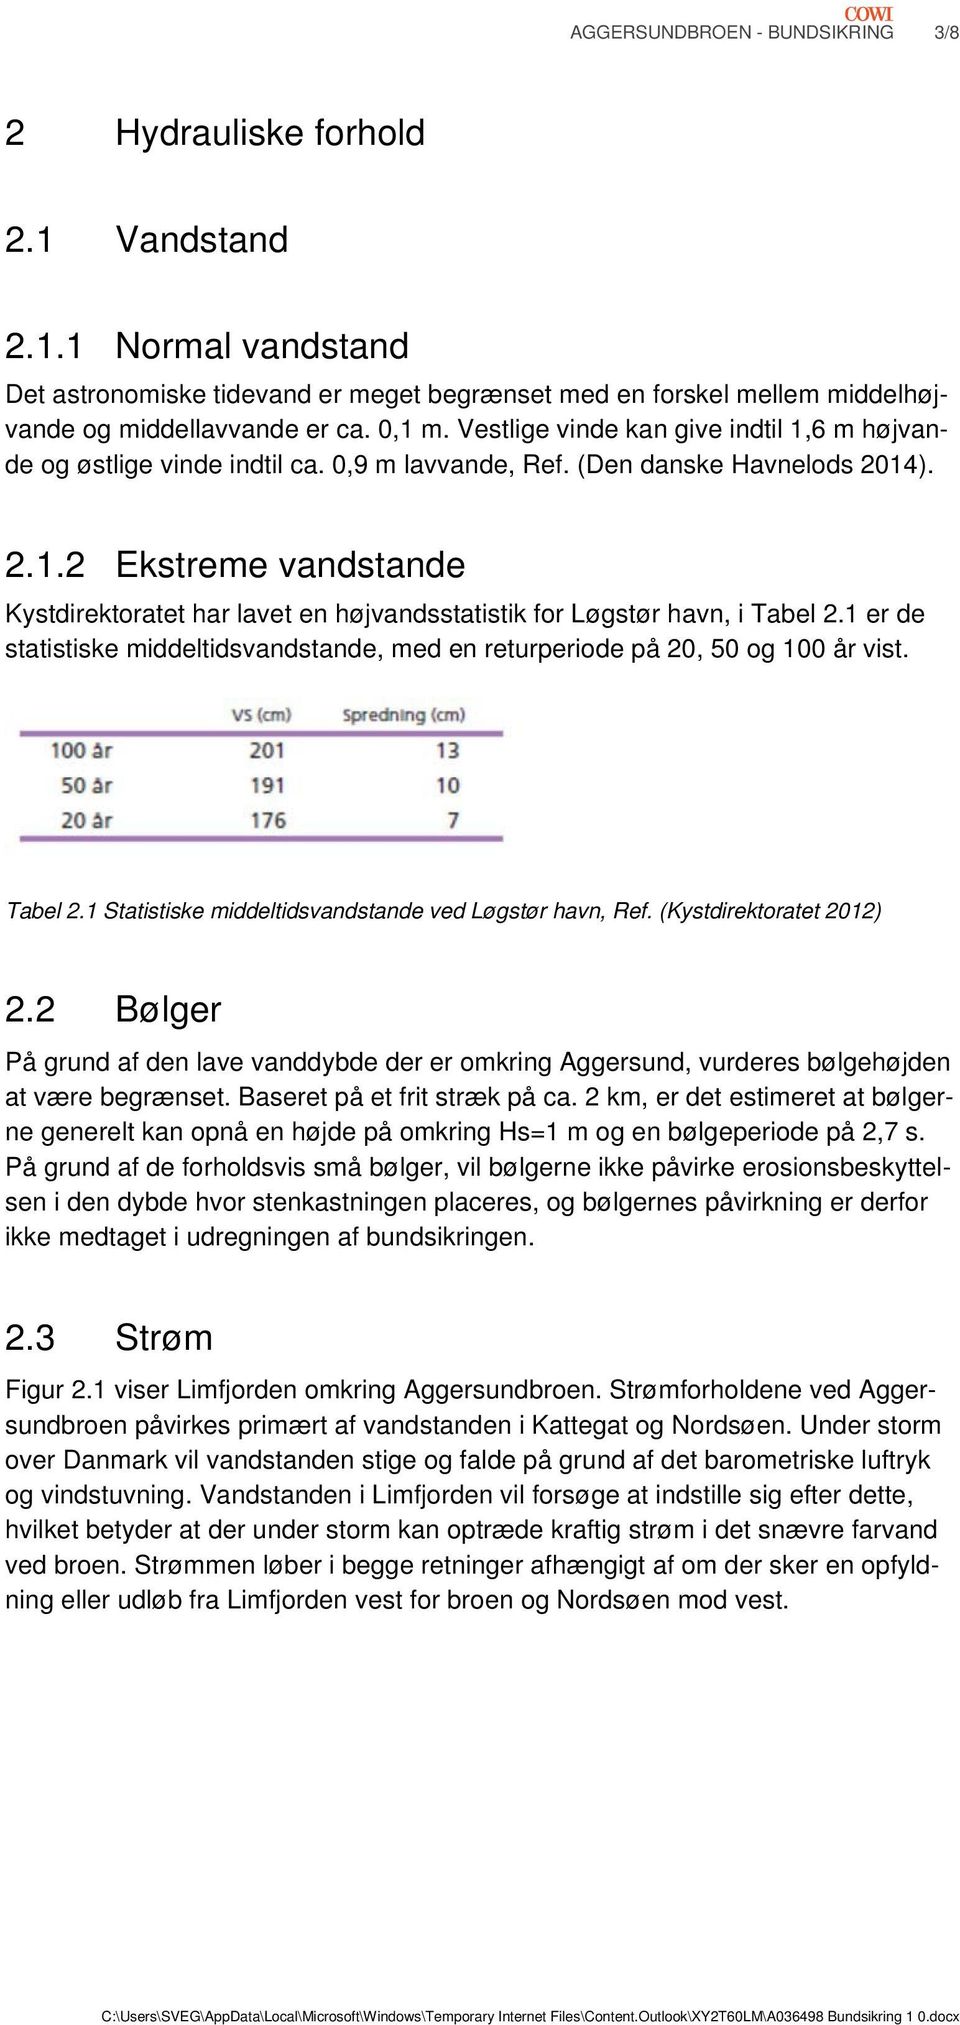 1 er de statistiske middeltidsvandstande, med en returperiode på 20, 50 og 100 år vist. Tabel 2.1 Statistiske middeltidsvandstande ved Løgstør havn, Ref. (Kystdirektoratet 2012) 2.